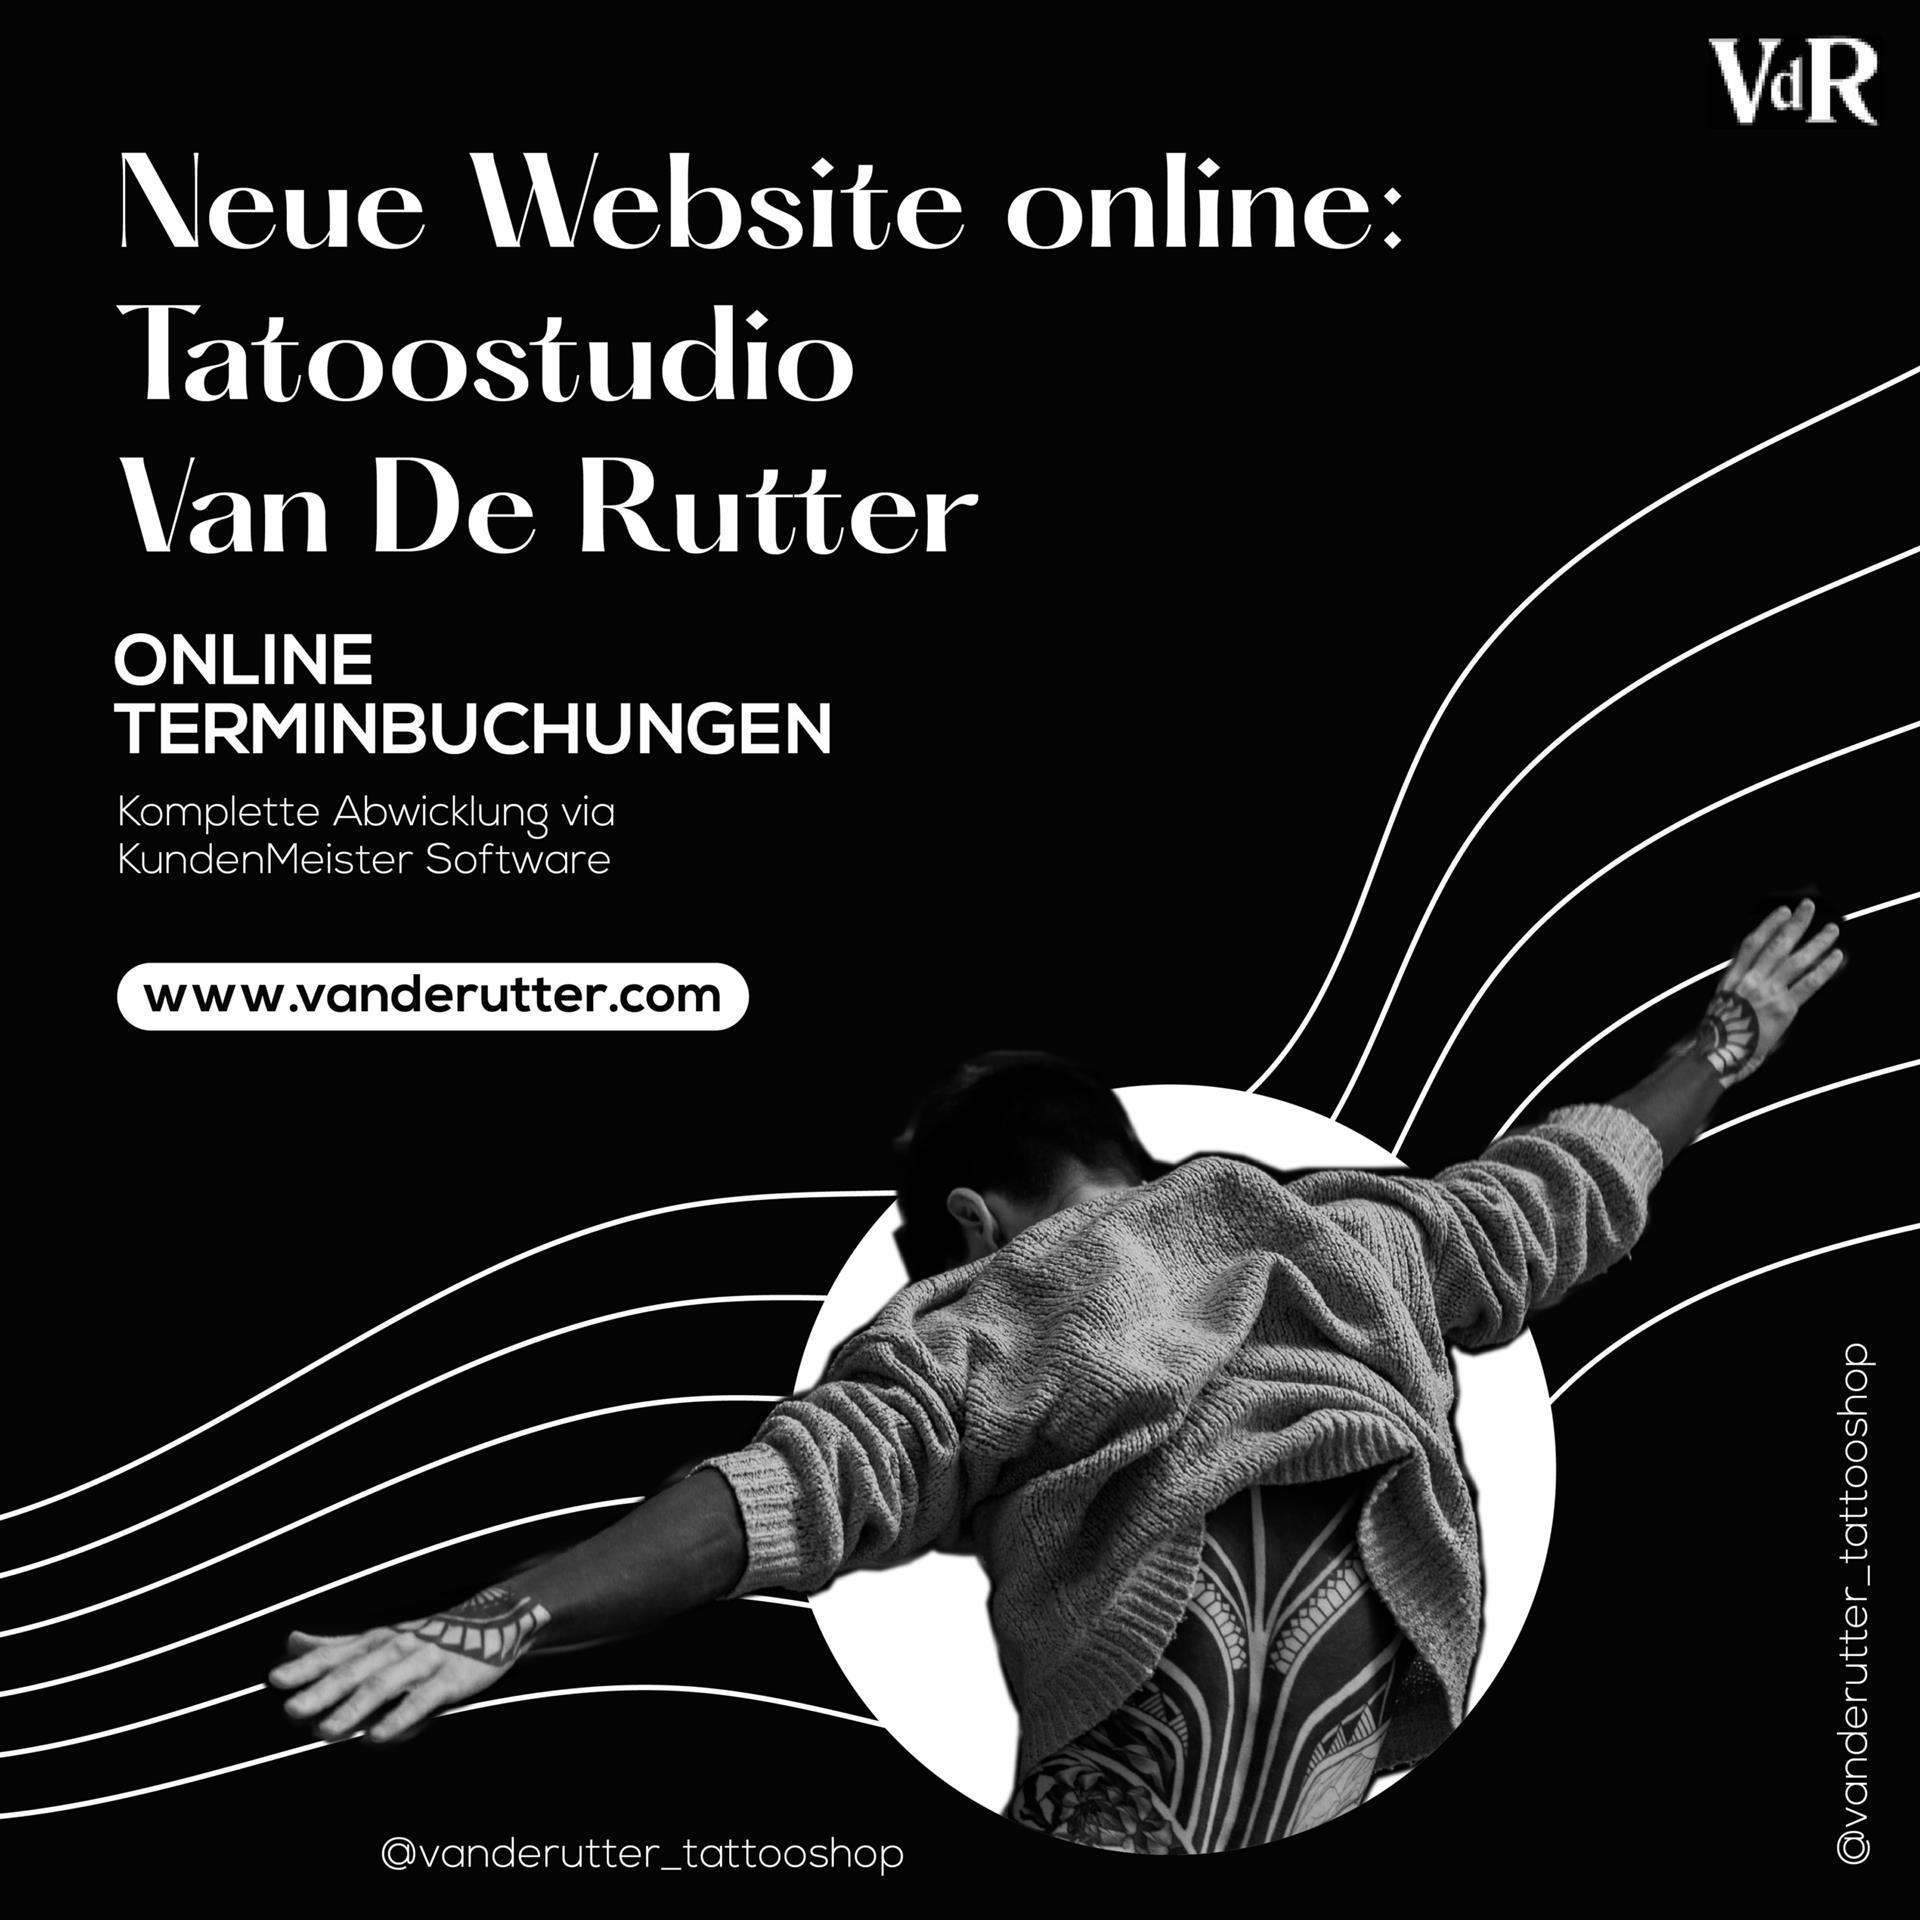 وب سایت جدید برای Van de Rutter